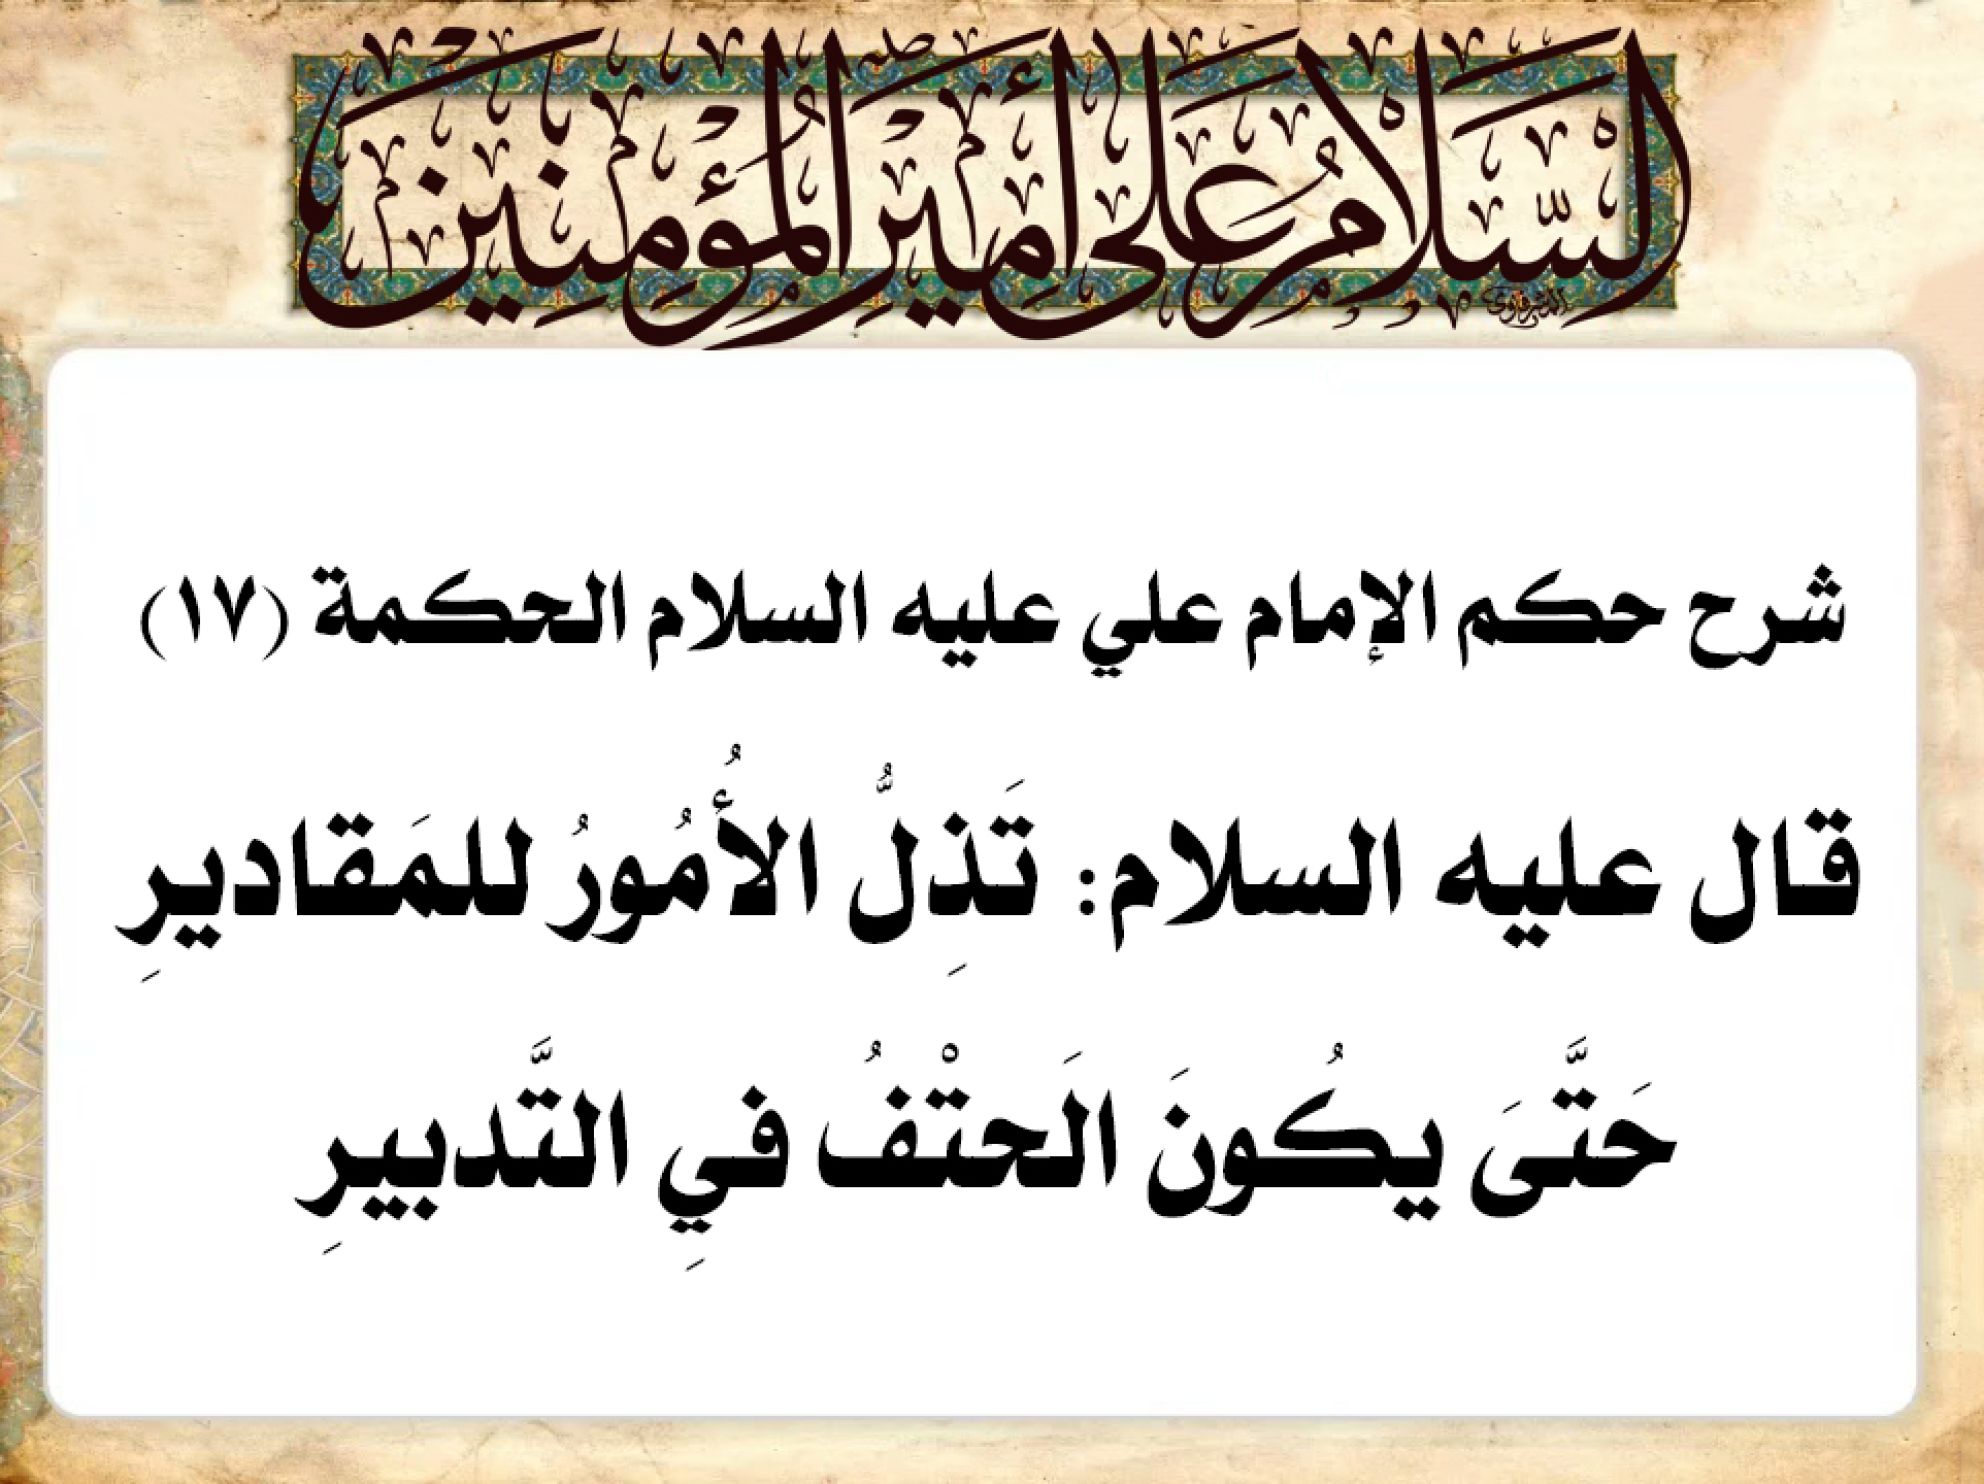 شرح حكم الإمام علي عليه السلام الحكمة (17) قال عليه السلام: تَذِلُّ الأُمُورُ للمَقاديرِ حَتَّىَ يكُونَ الَحتْفُ فيِ التَّدبيرِ